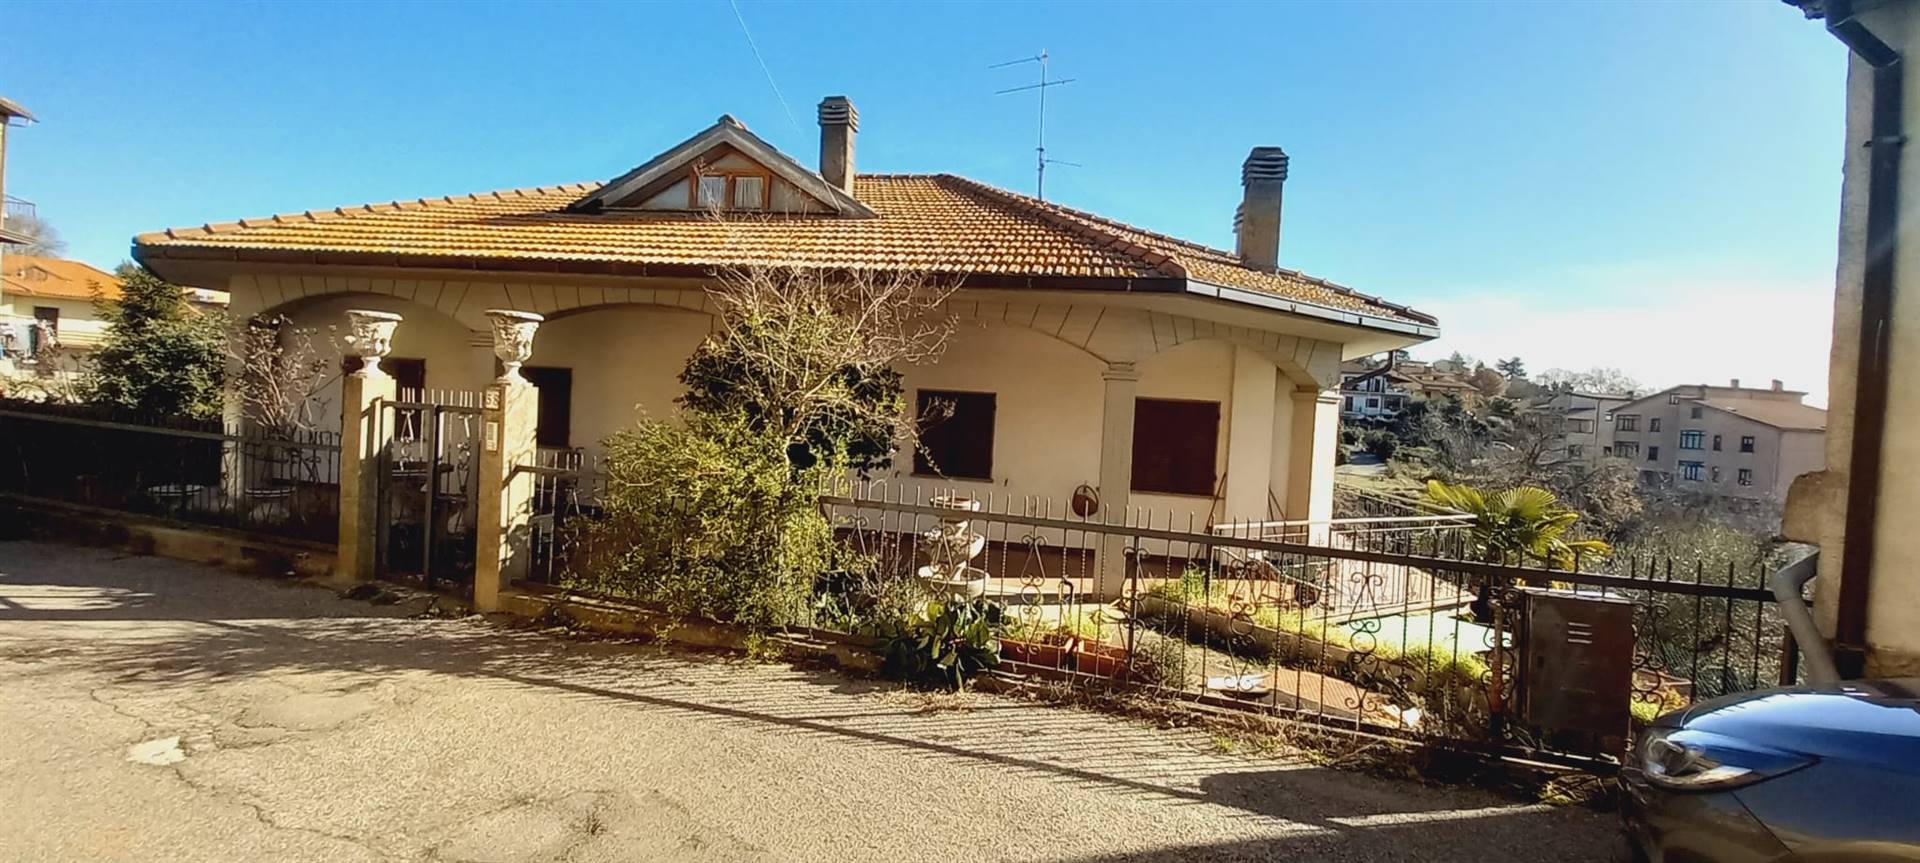 Villa in vendita a Montefiascone, 8 locali, zona onami, prezzo € 200.000 | PortaleAgenzieImmobiliari.it